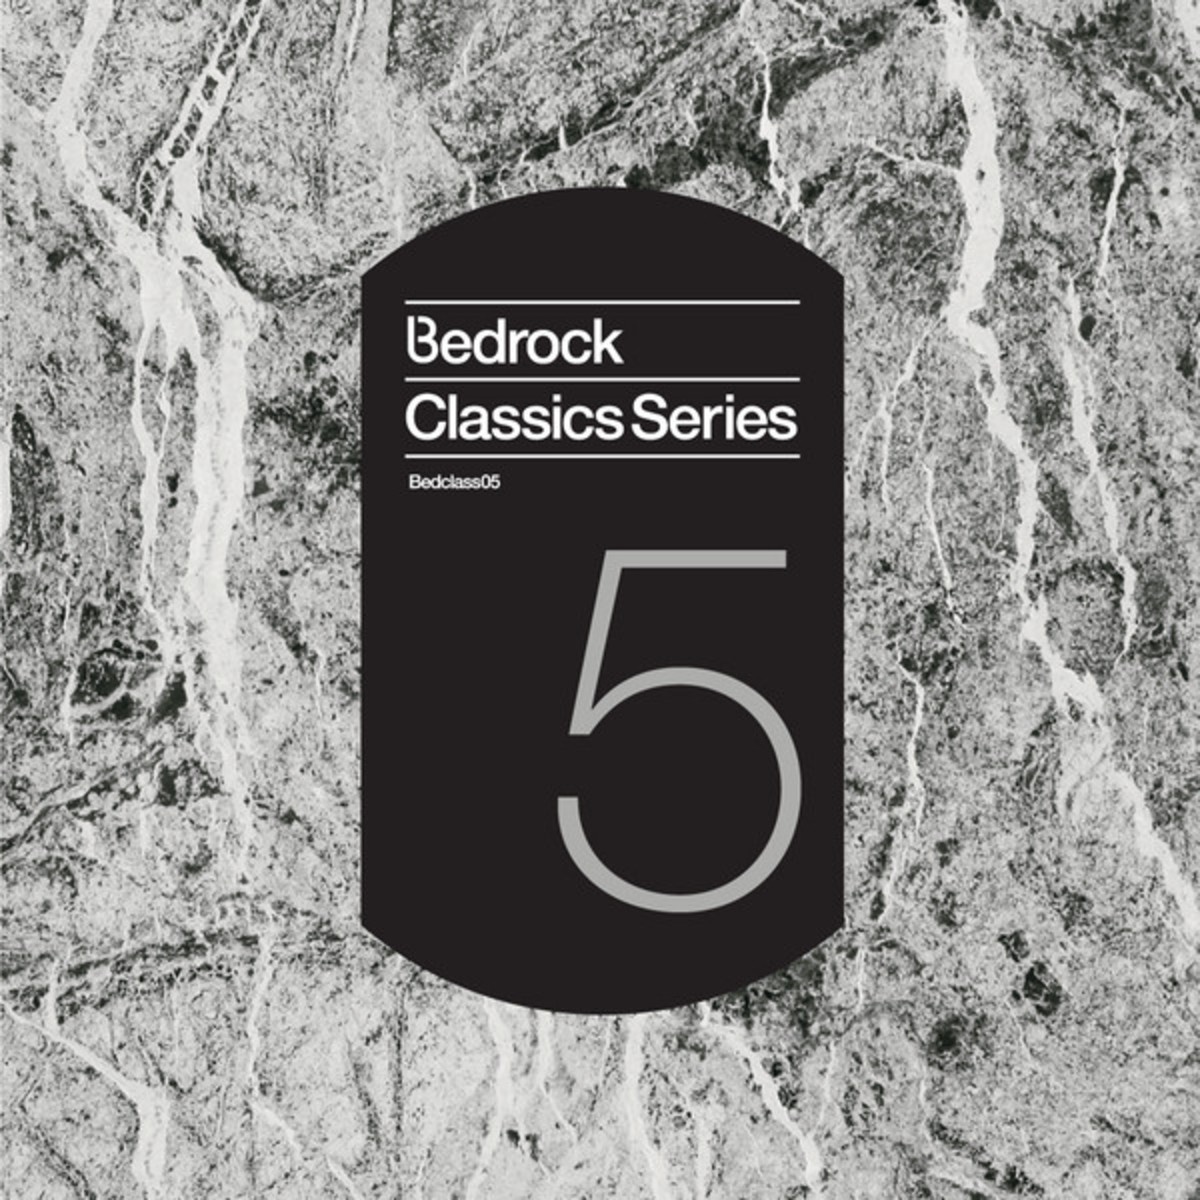 Bedrock Classics Series 5